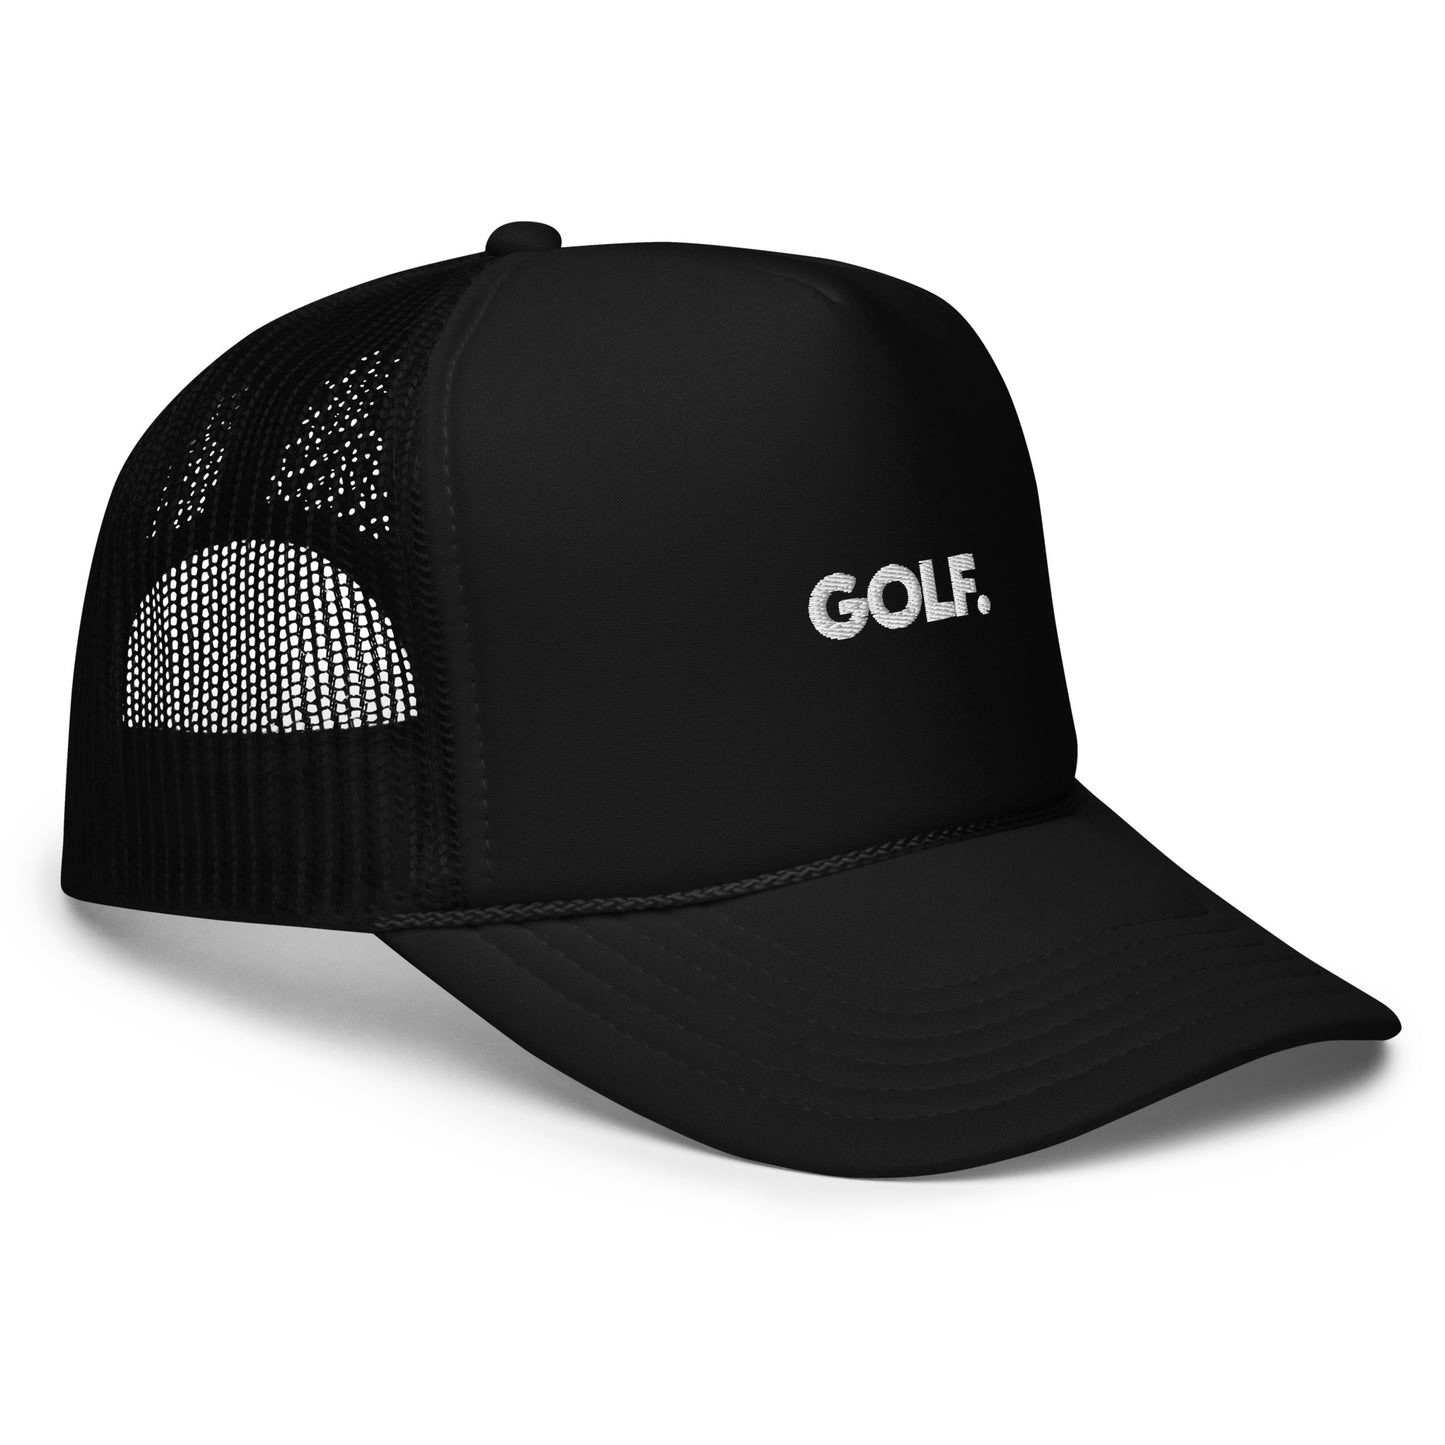 GOLF. Trucker Hat